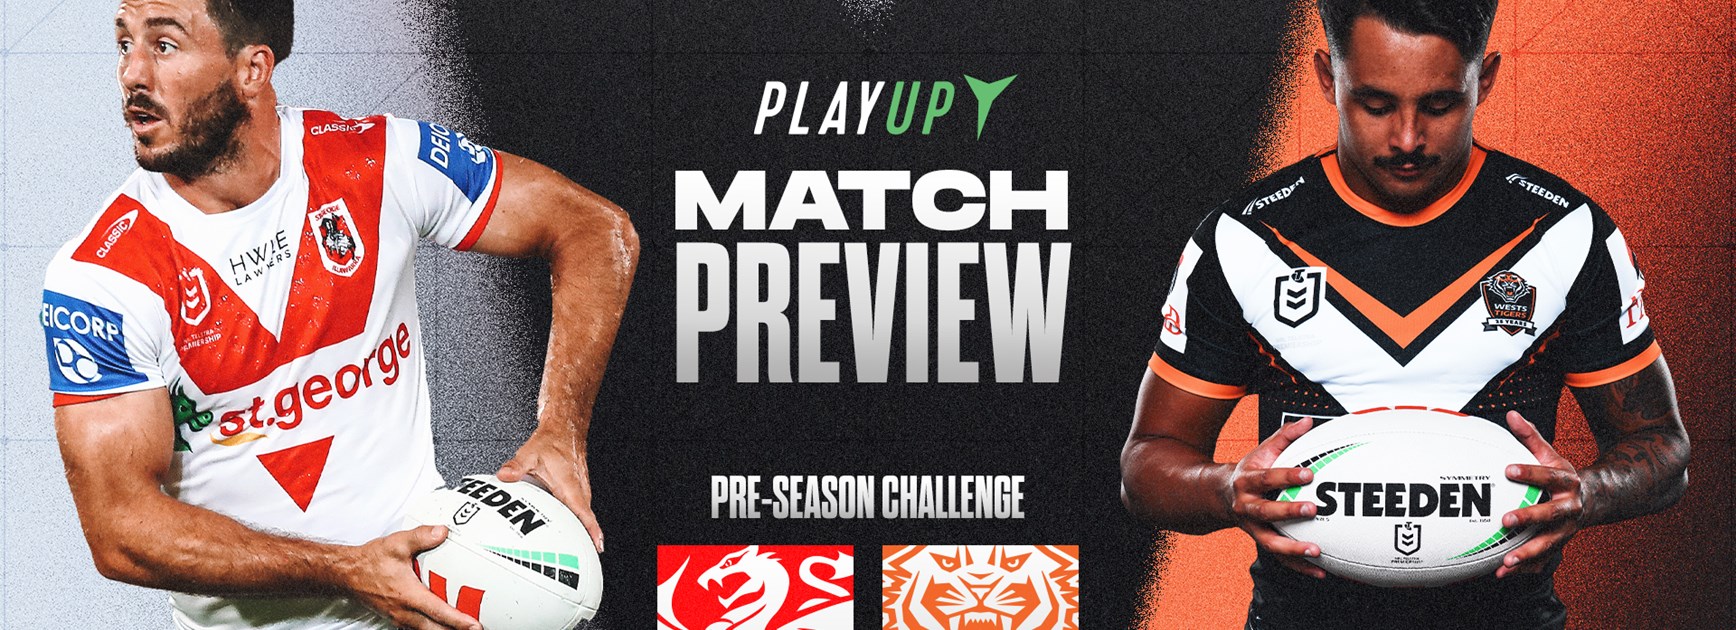 Match Preview: Pre-season Challenge vs Dragons